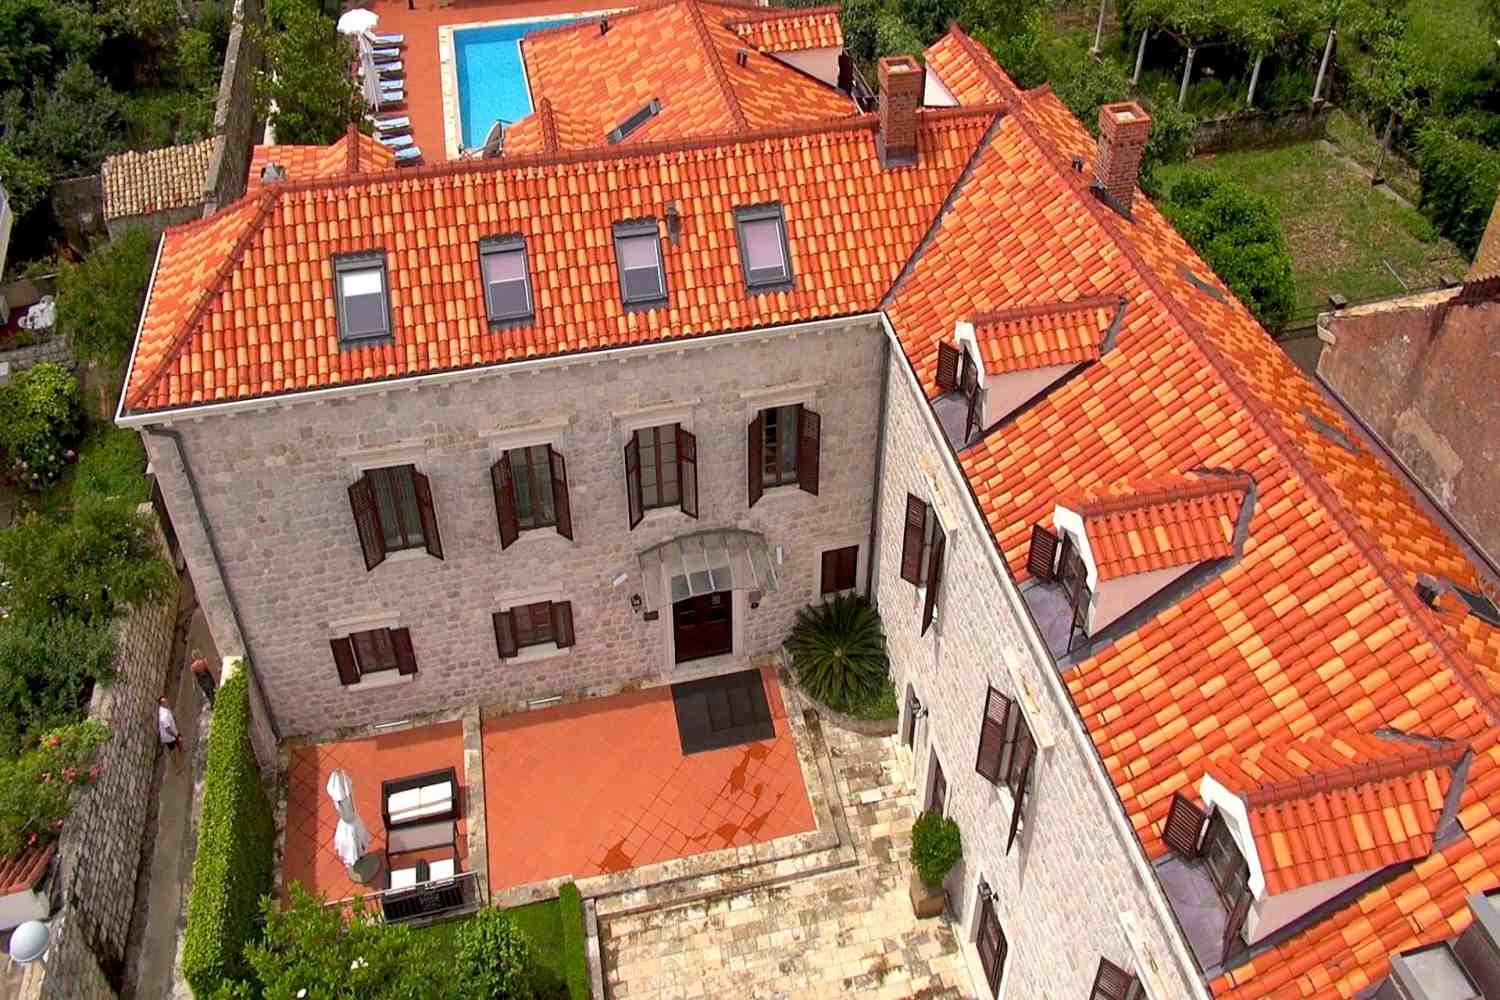 Hotel Kazbek Dubrovnik - Croatia